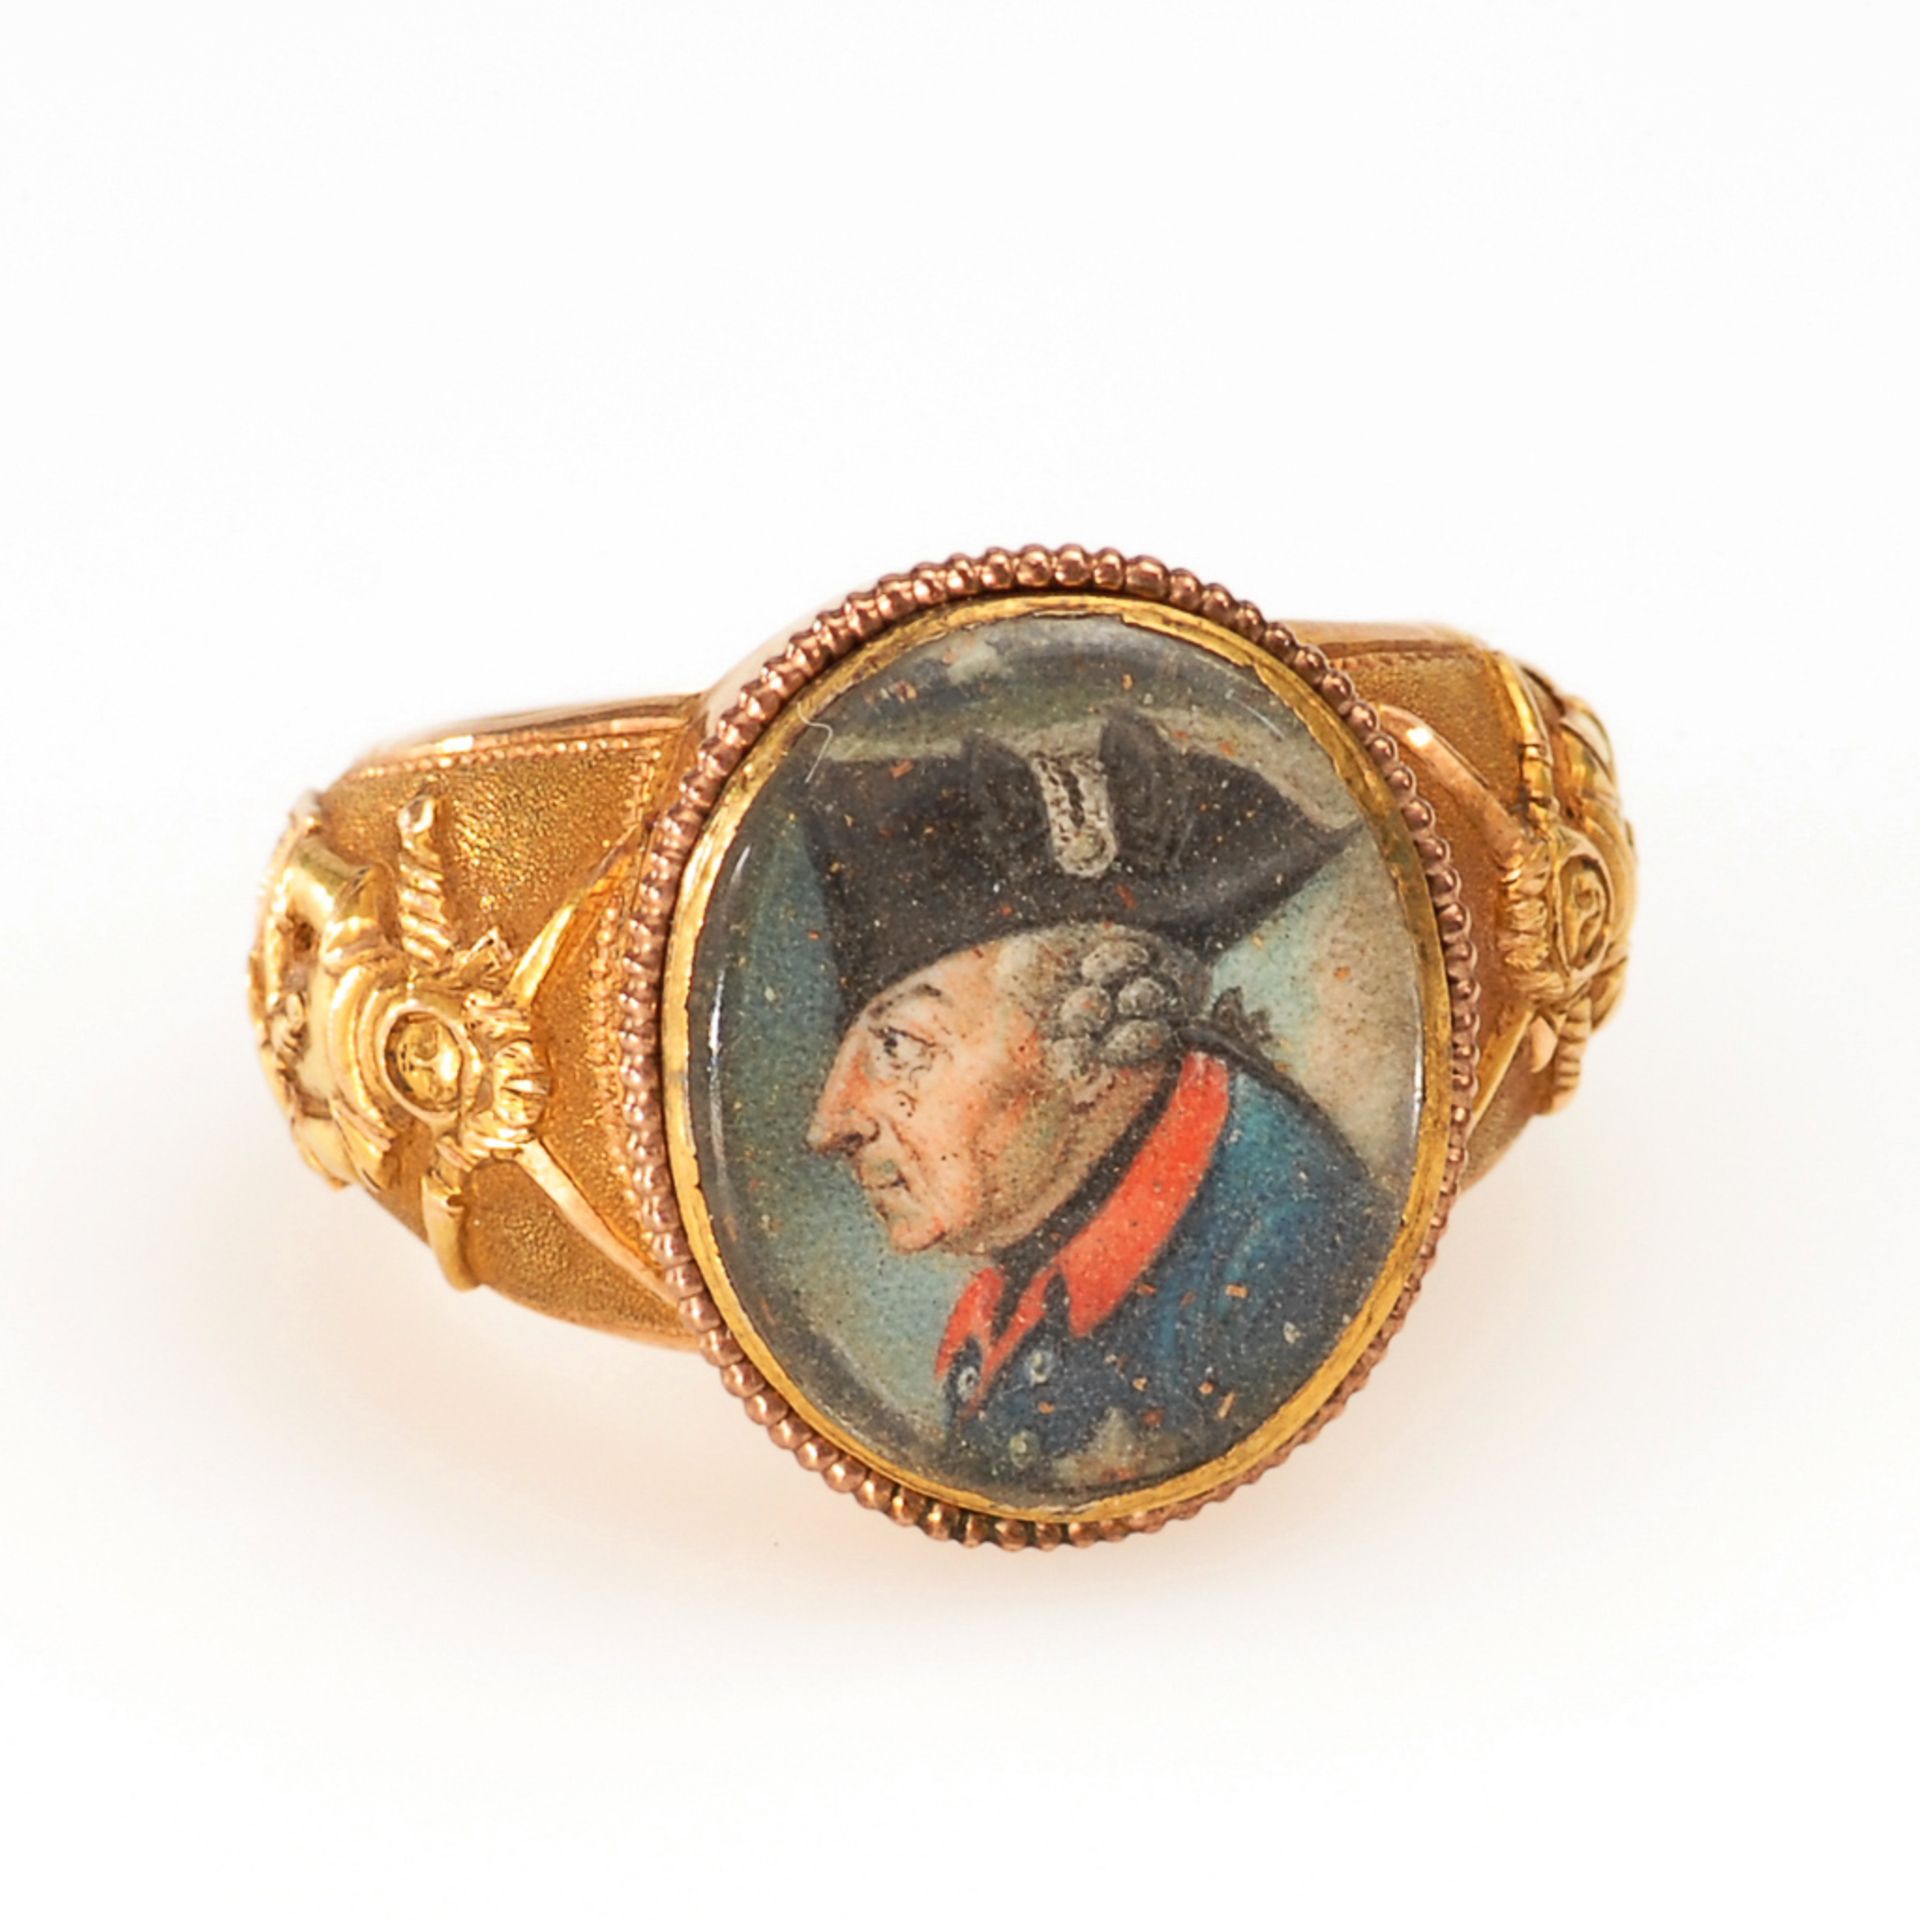 Goldener Herrenring mit Miniatur "Alter Fritz", um 1780. A Golden Gentleman's Ring with Miniature of